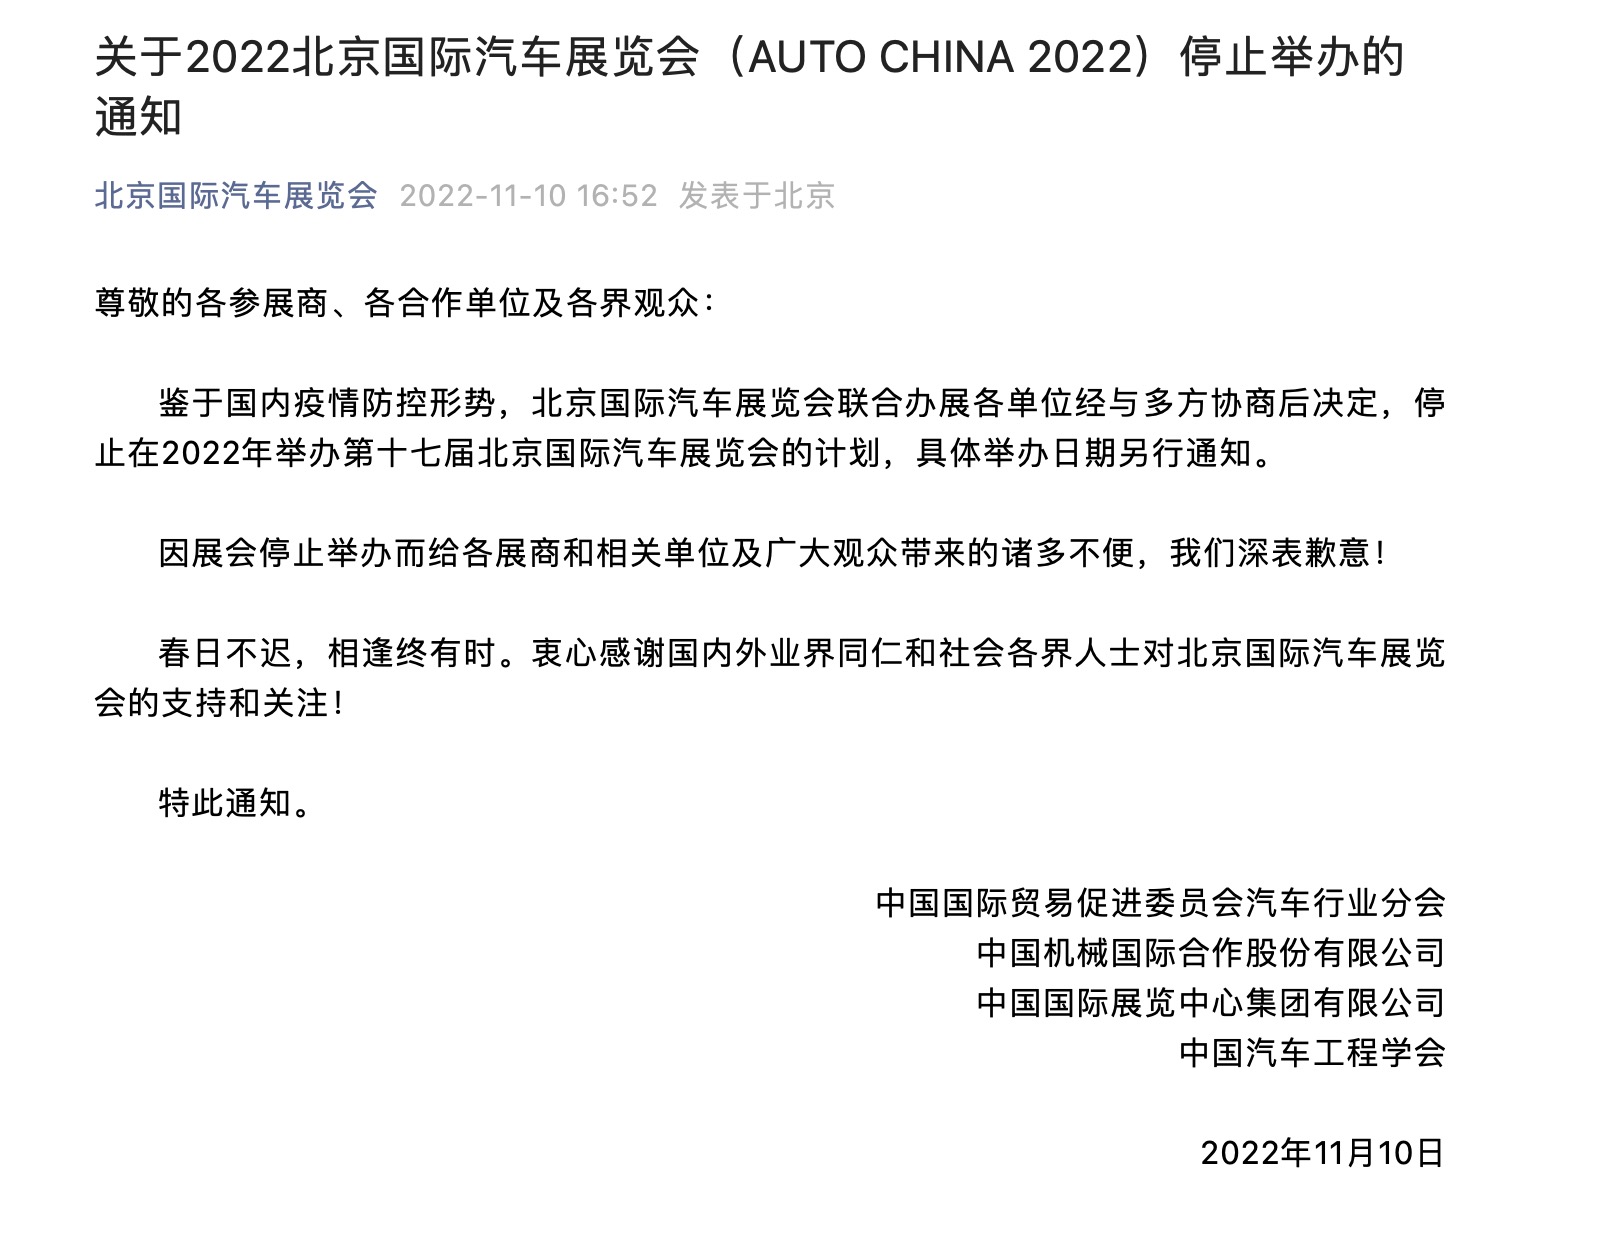 2022北京车展最新通知，官方宣布取消